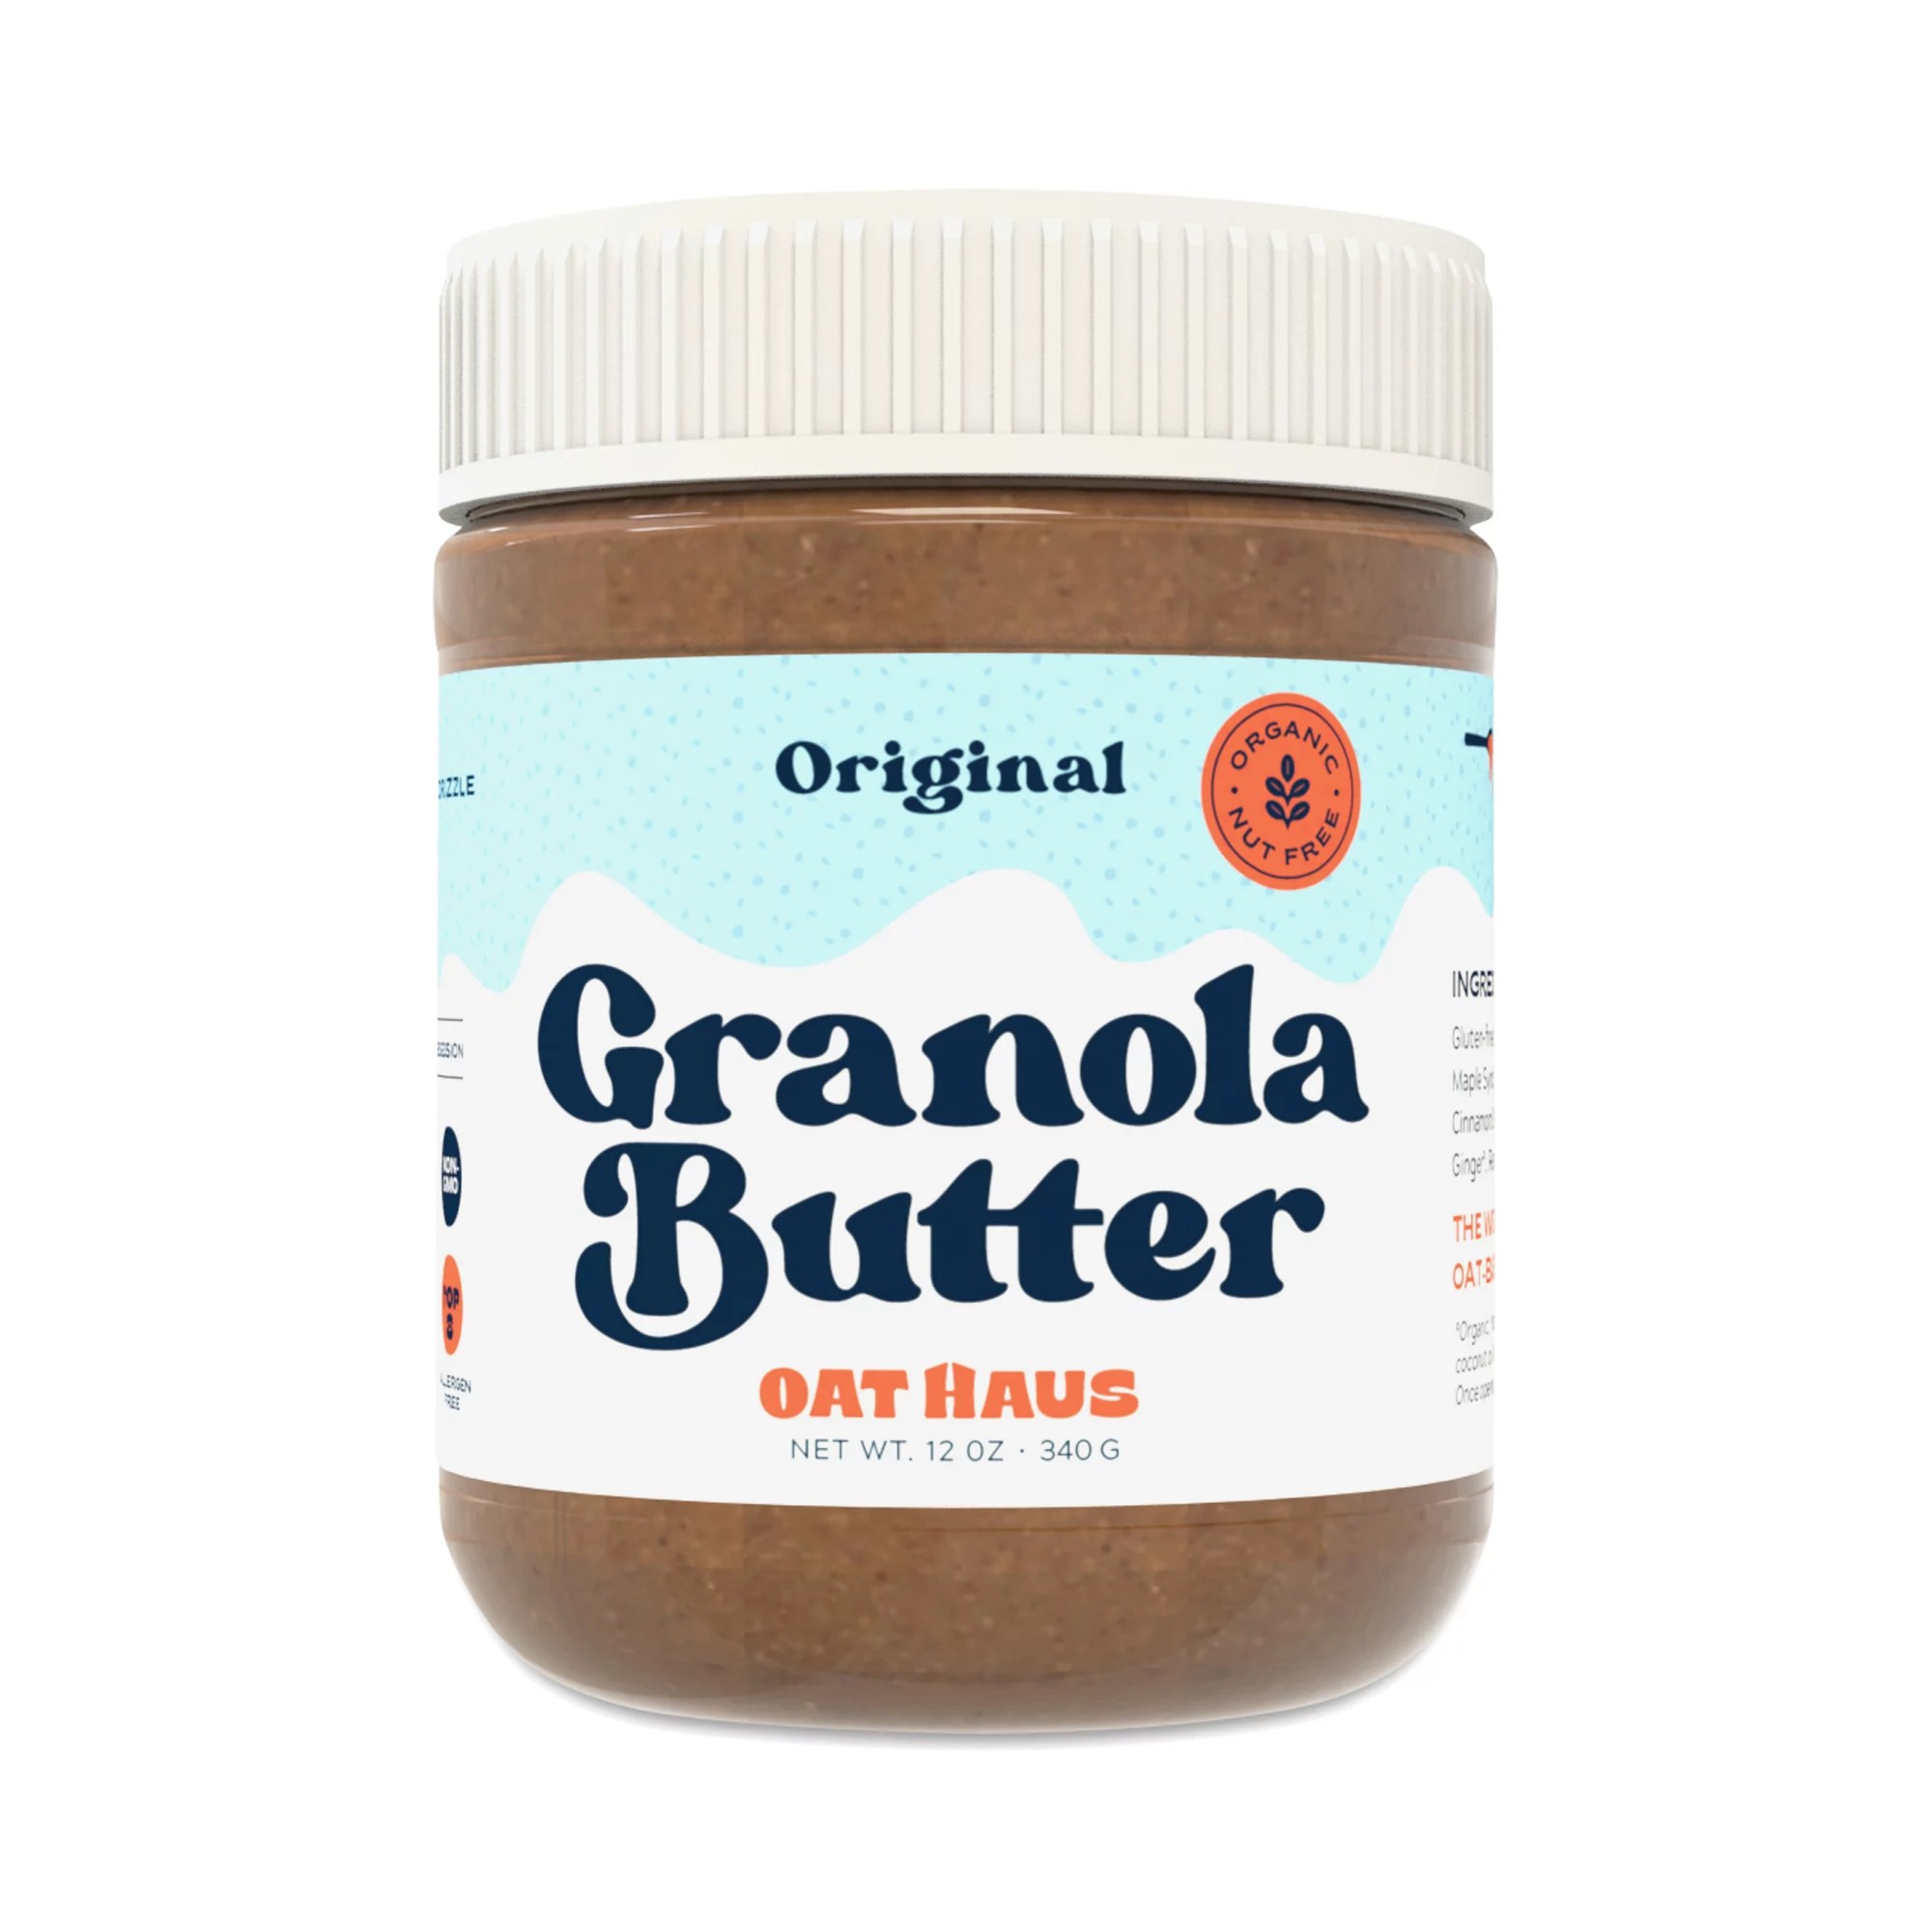 Oat Haus granola butter